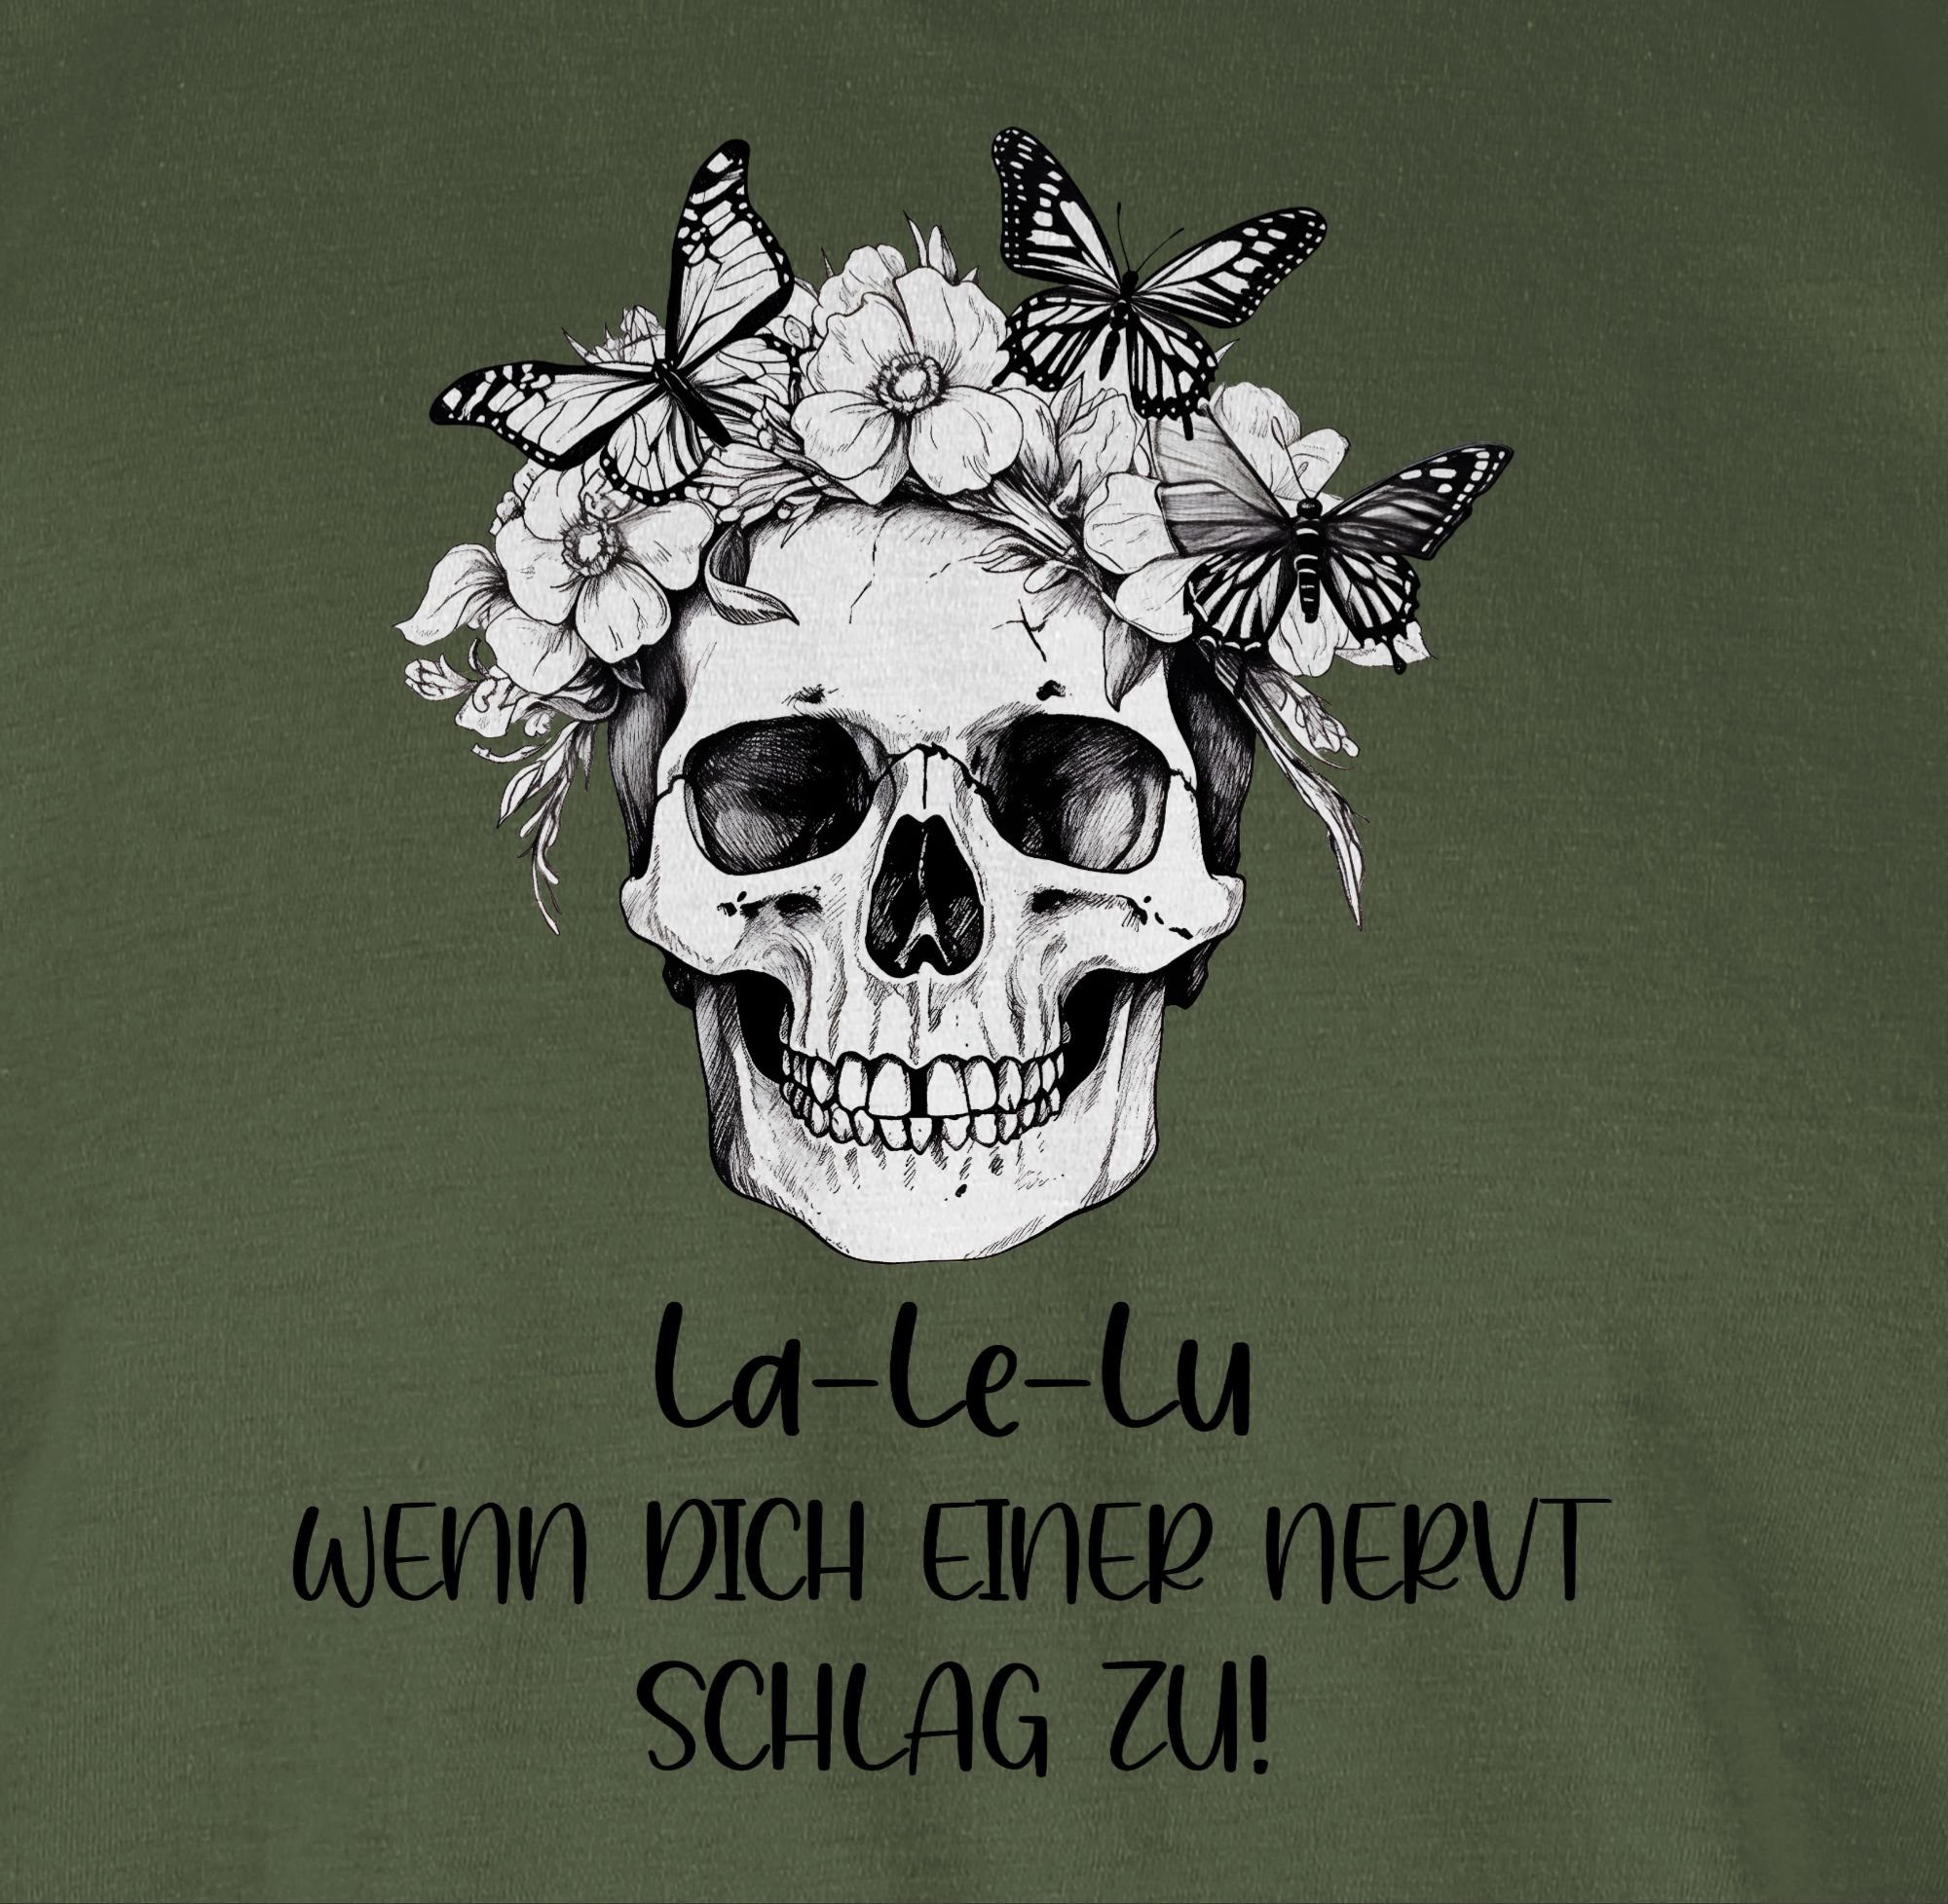 Lu Koll Skull nervt zu schlag dich Army wenn La Statement T-Shirt Totenkopf Grün einer Le Kollegen Shirtracer 01